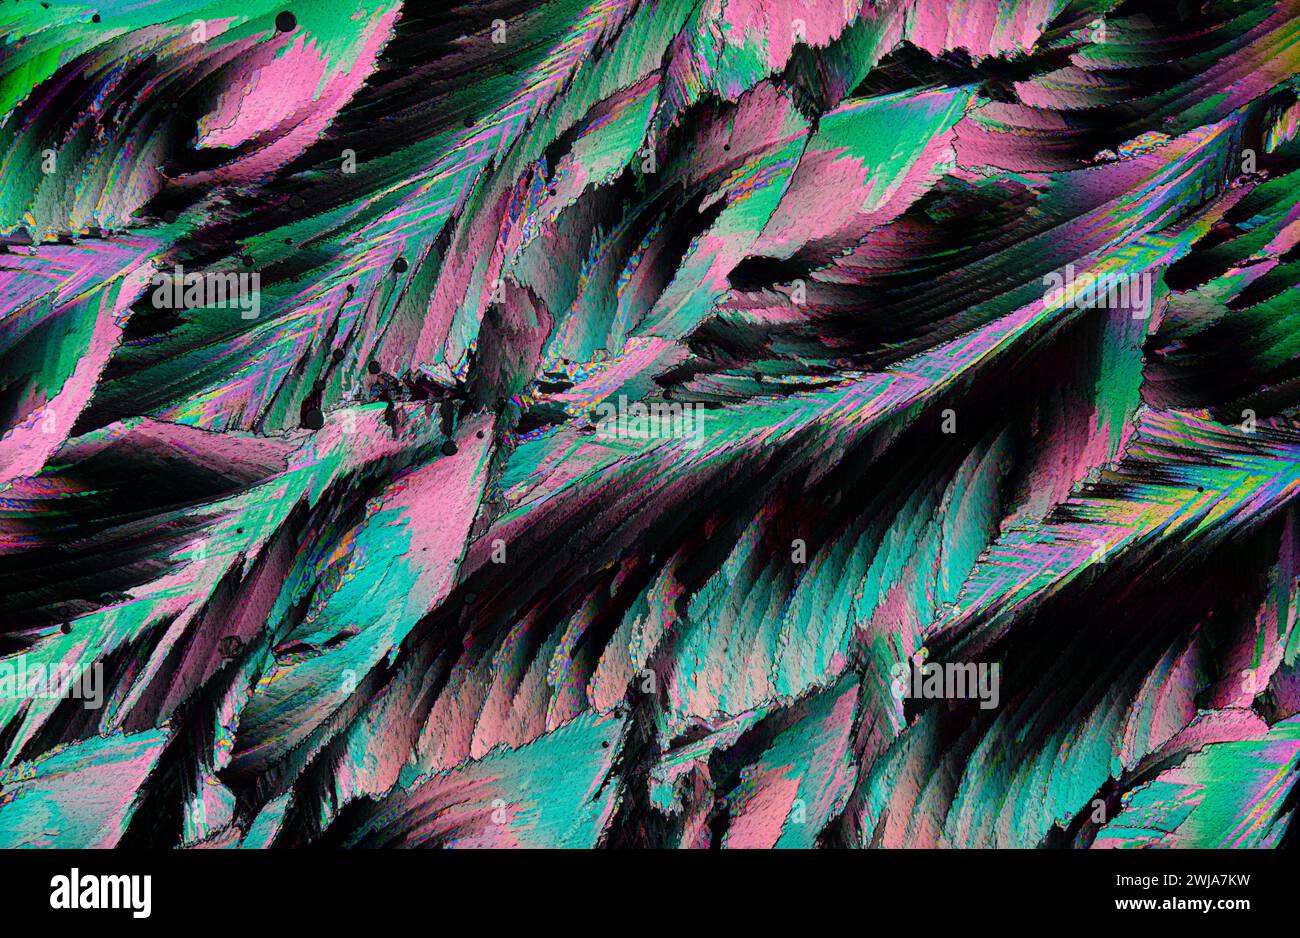 Ein Bild mit einer Nahaufnahme von Federn mit einer abstrakten Neonfarbenpalette, die eine lebendige visuelle Textur erzeugt Stockfoto